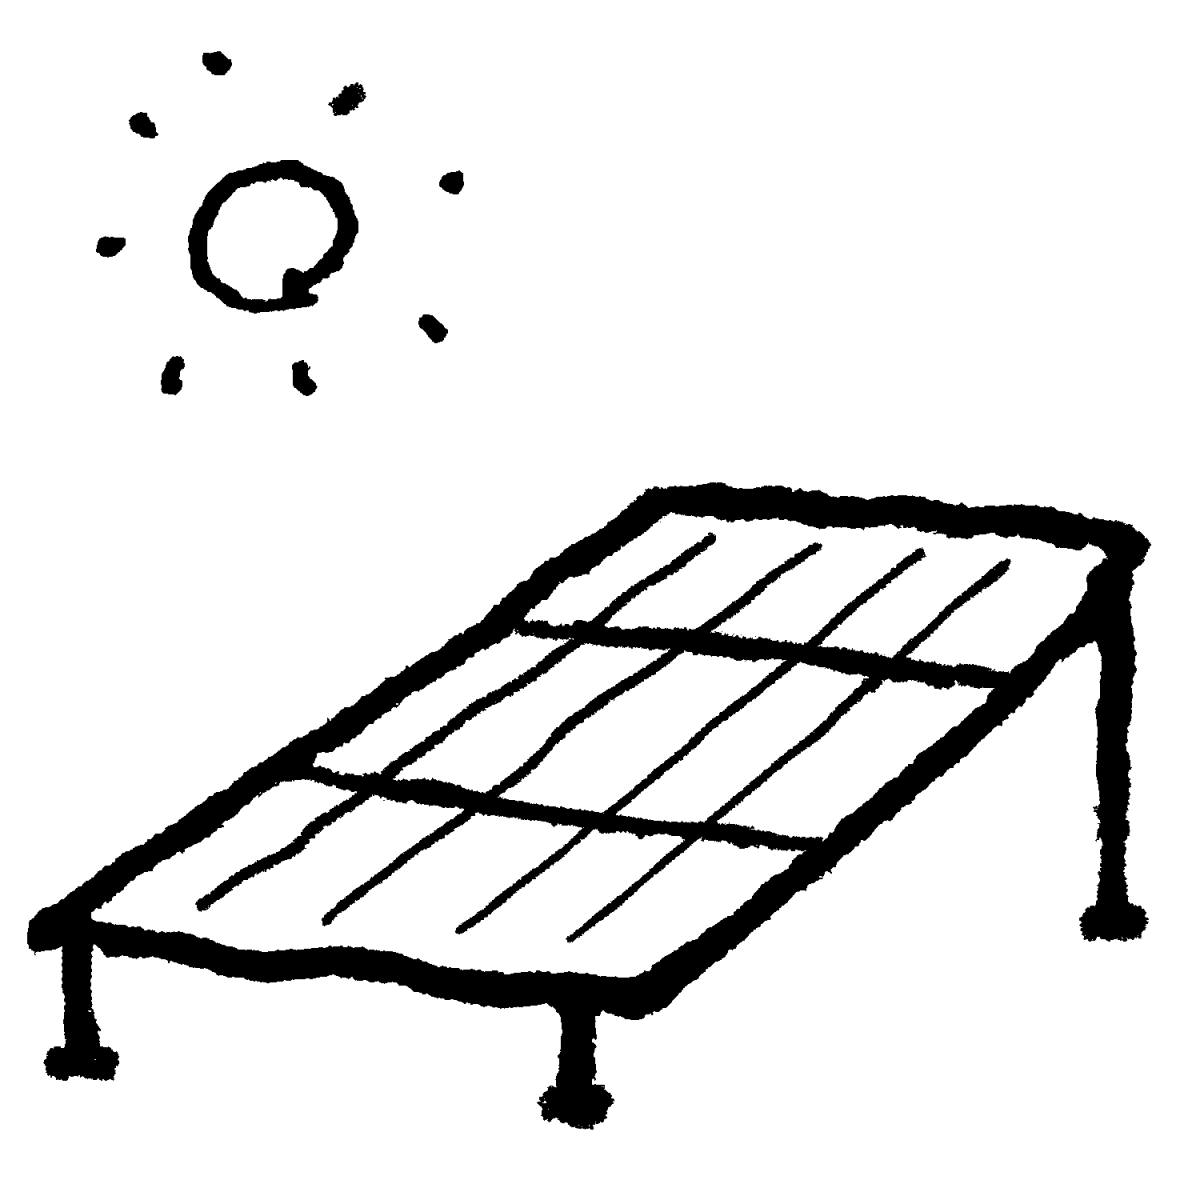 太陽光パネルのイラスト / Solar panel Illustration